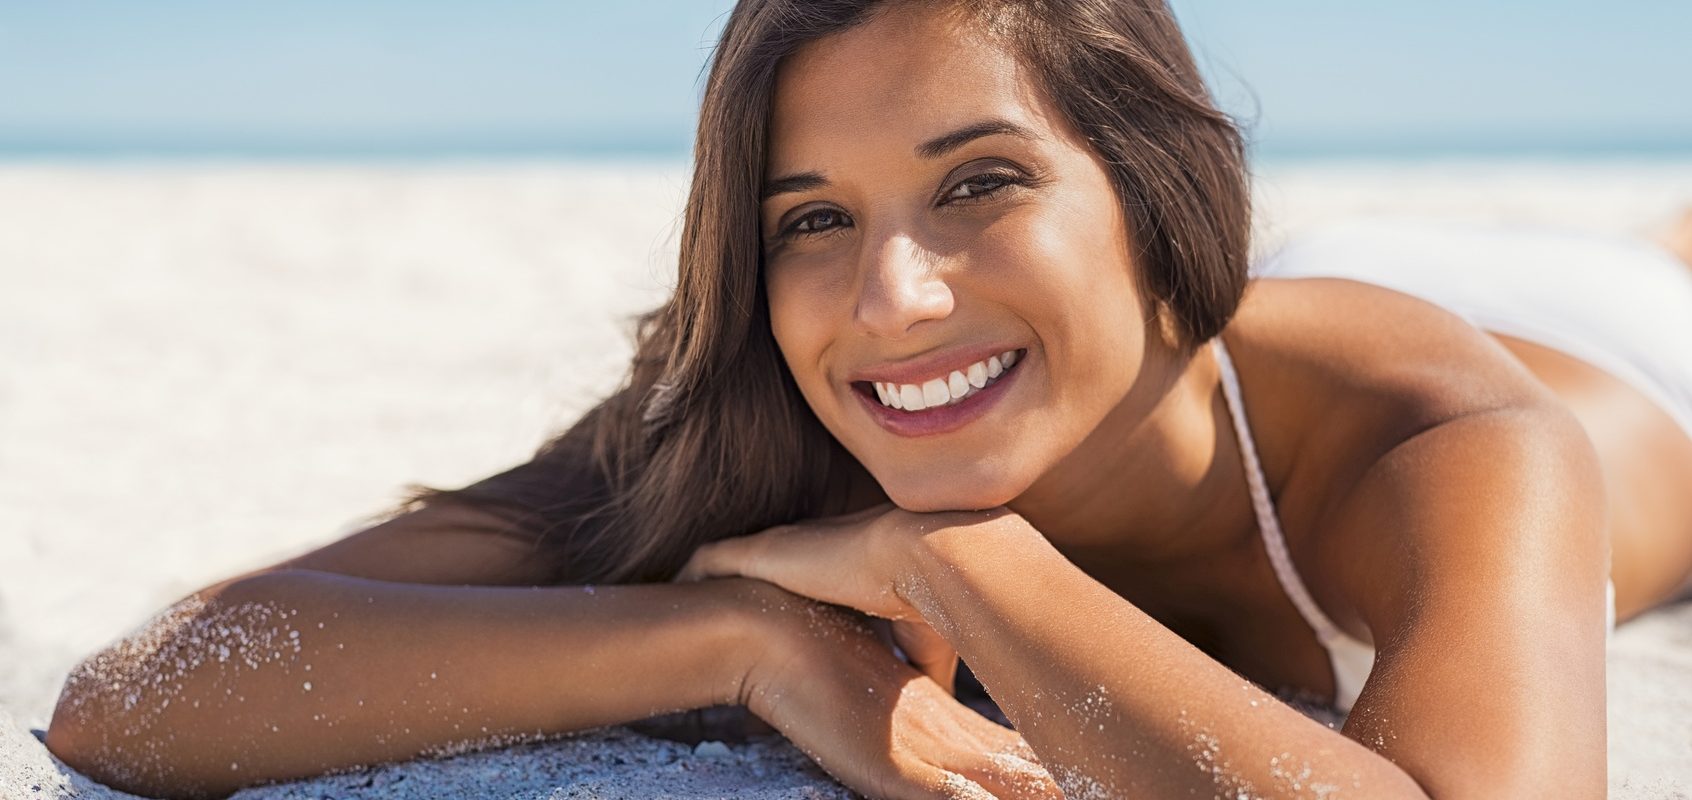 Witamina D3 - w jaki sposób najlepiej ją przyjmować? Uśmiechnięta dziewczyna opala się na plaży nad morzem.